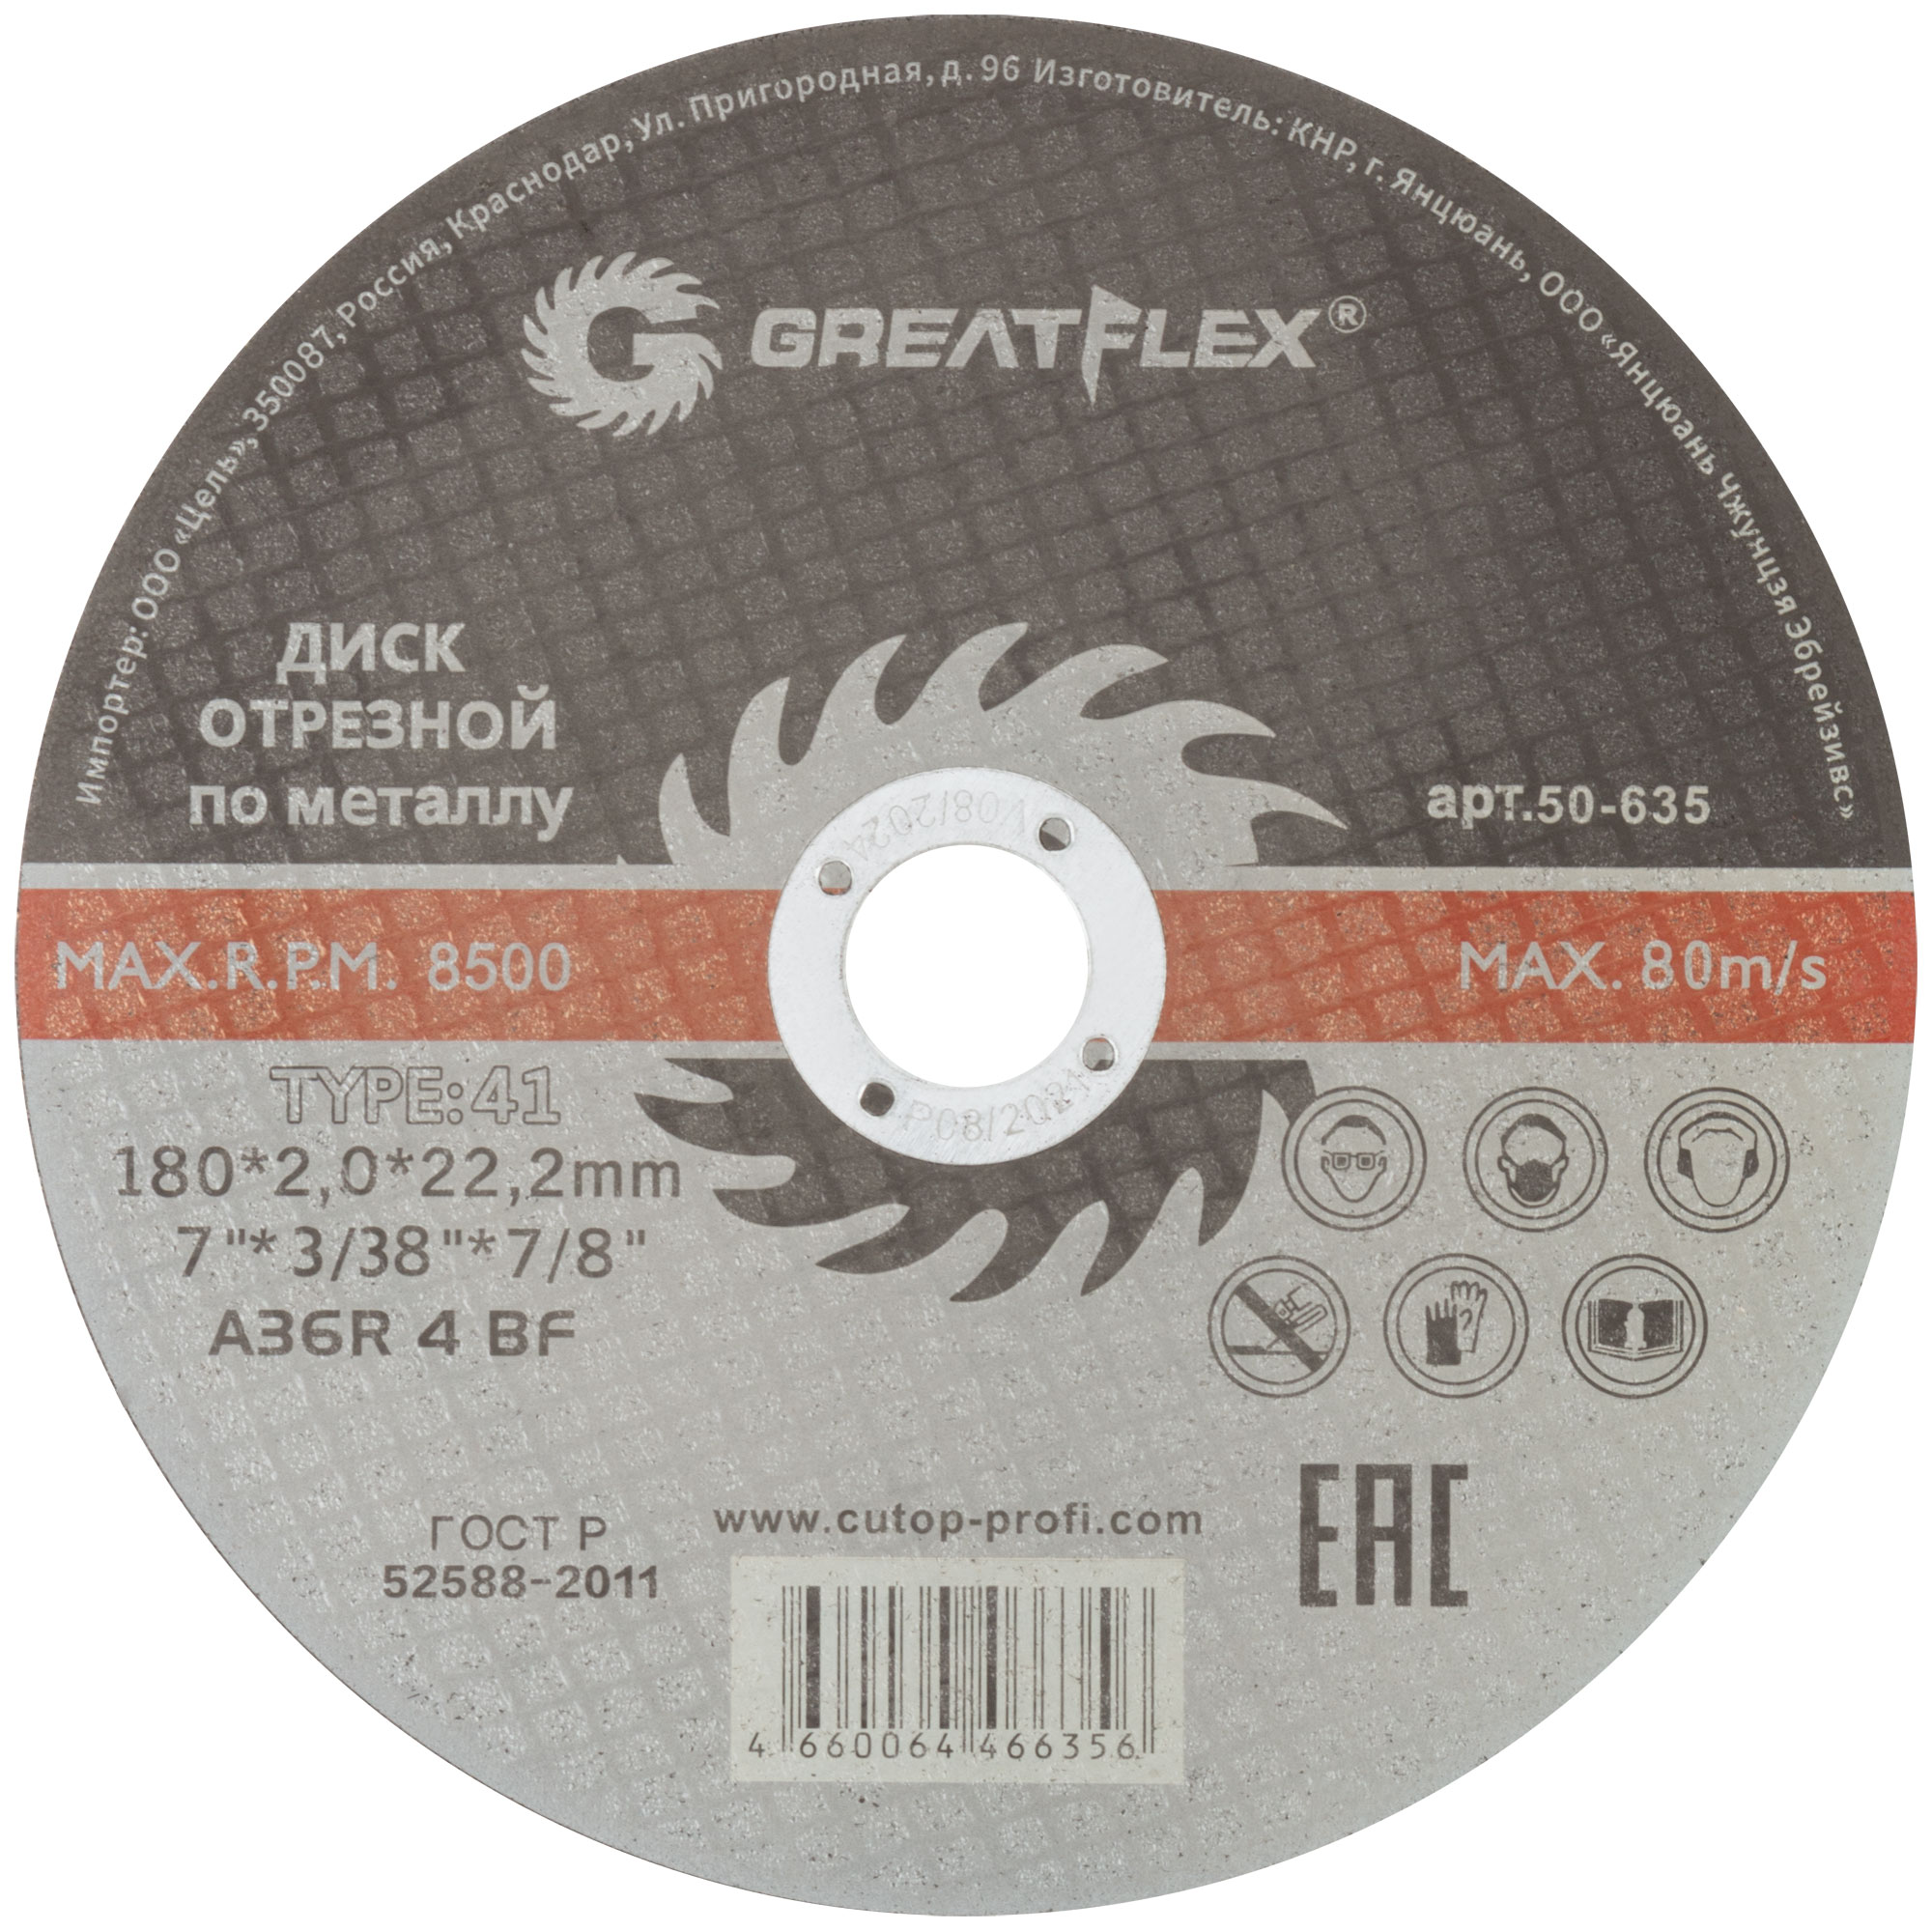 Диск отрезной по металлу Greatflex T41-180 х 2,0 х 22.2 мм, класс Master